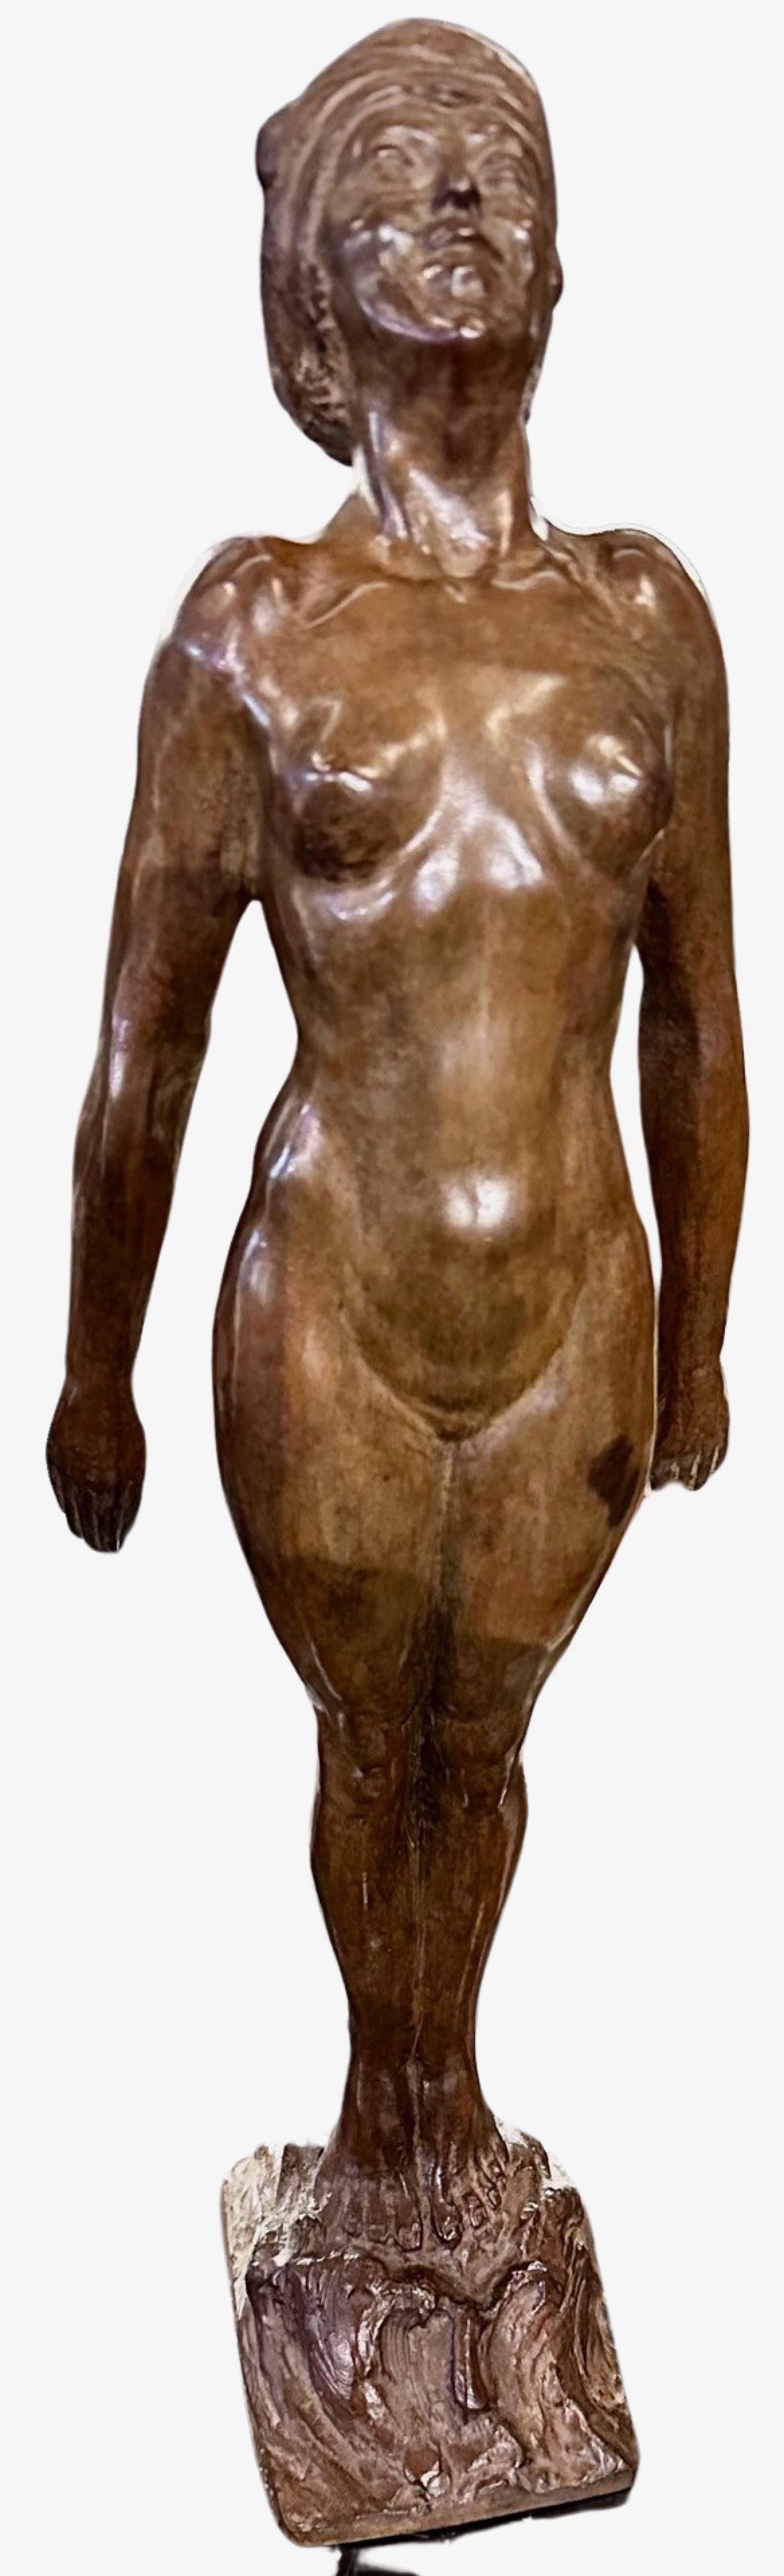 Statue féminine nue se baignant de style Art déco français de Guillaume Dumont 1923